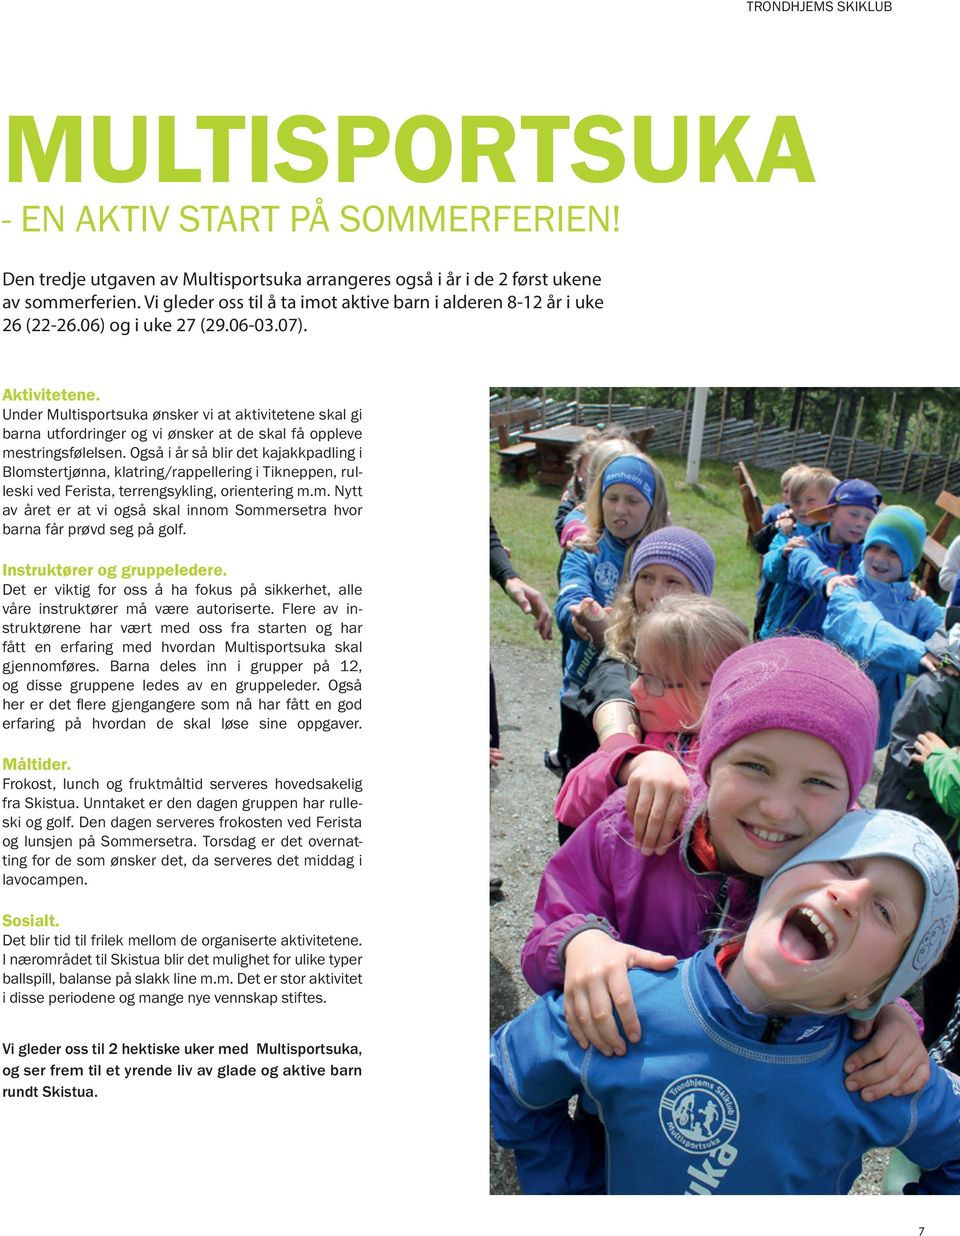 Under Multisportsuka ønsker vi at aktivitetene skal gi barna utfordringer og vi ønsker at de skal få oppleve mestringsfølelsen.